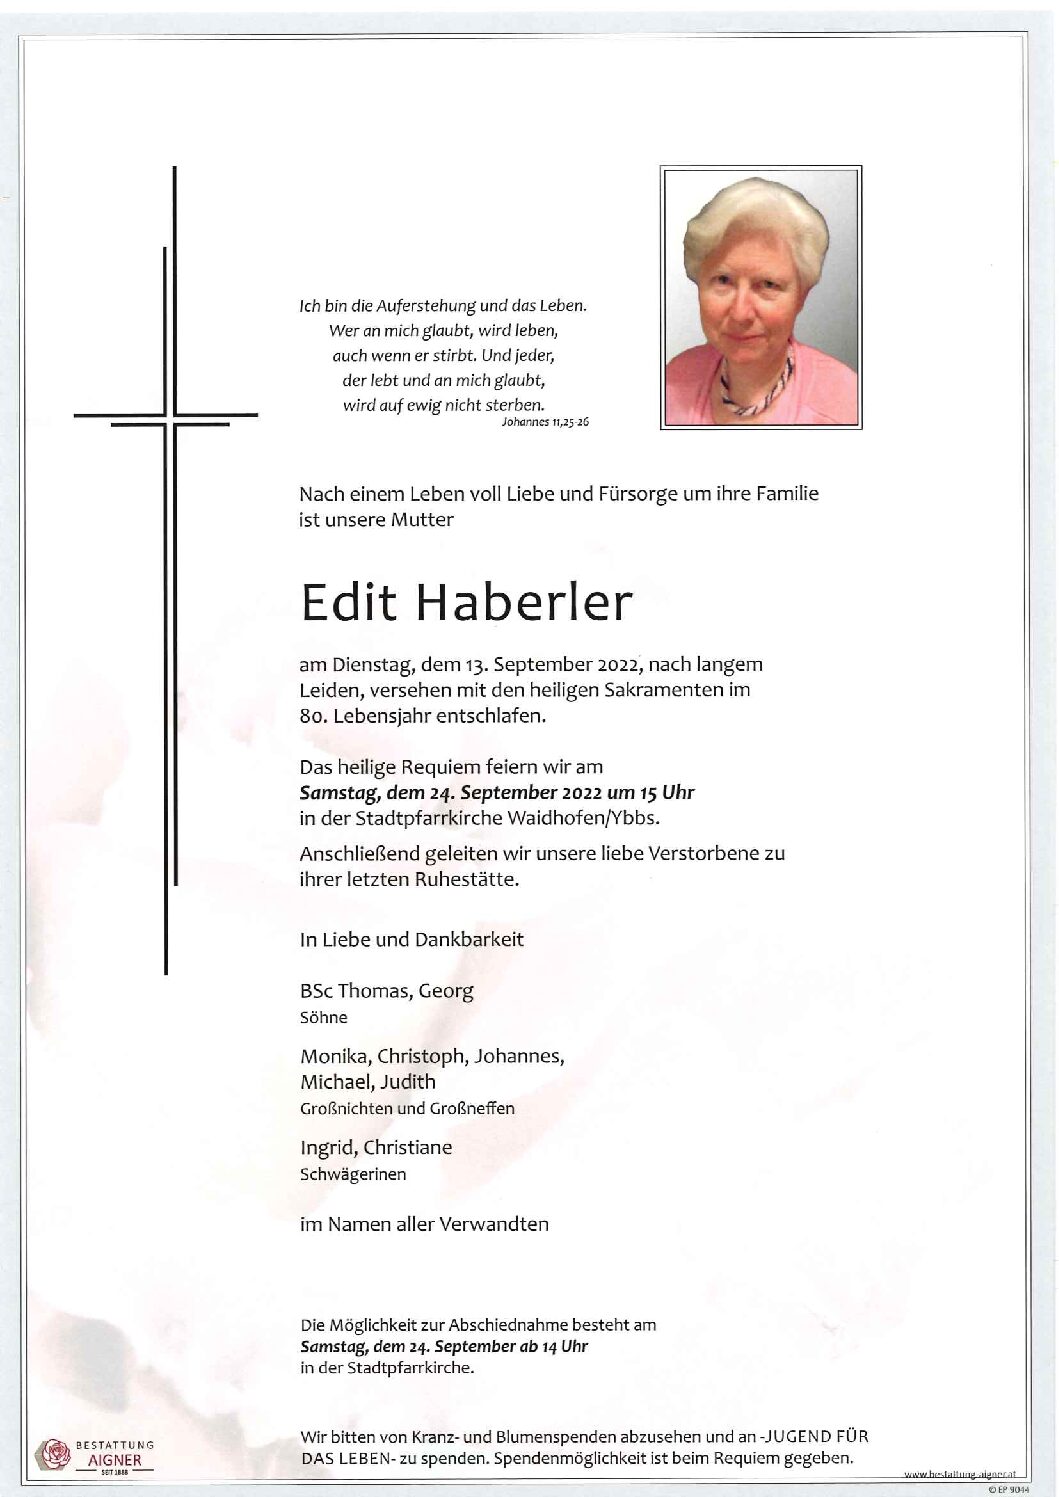 Edith Haberler